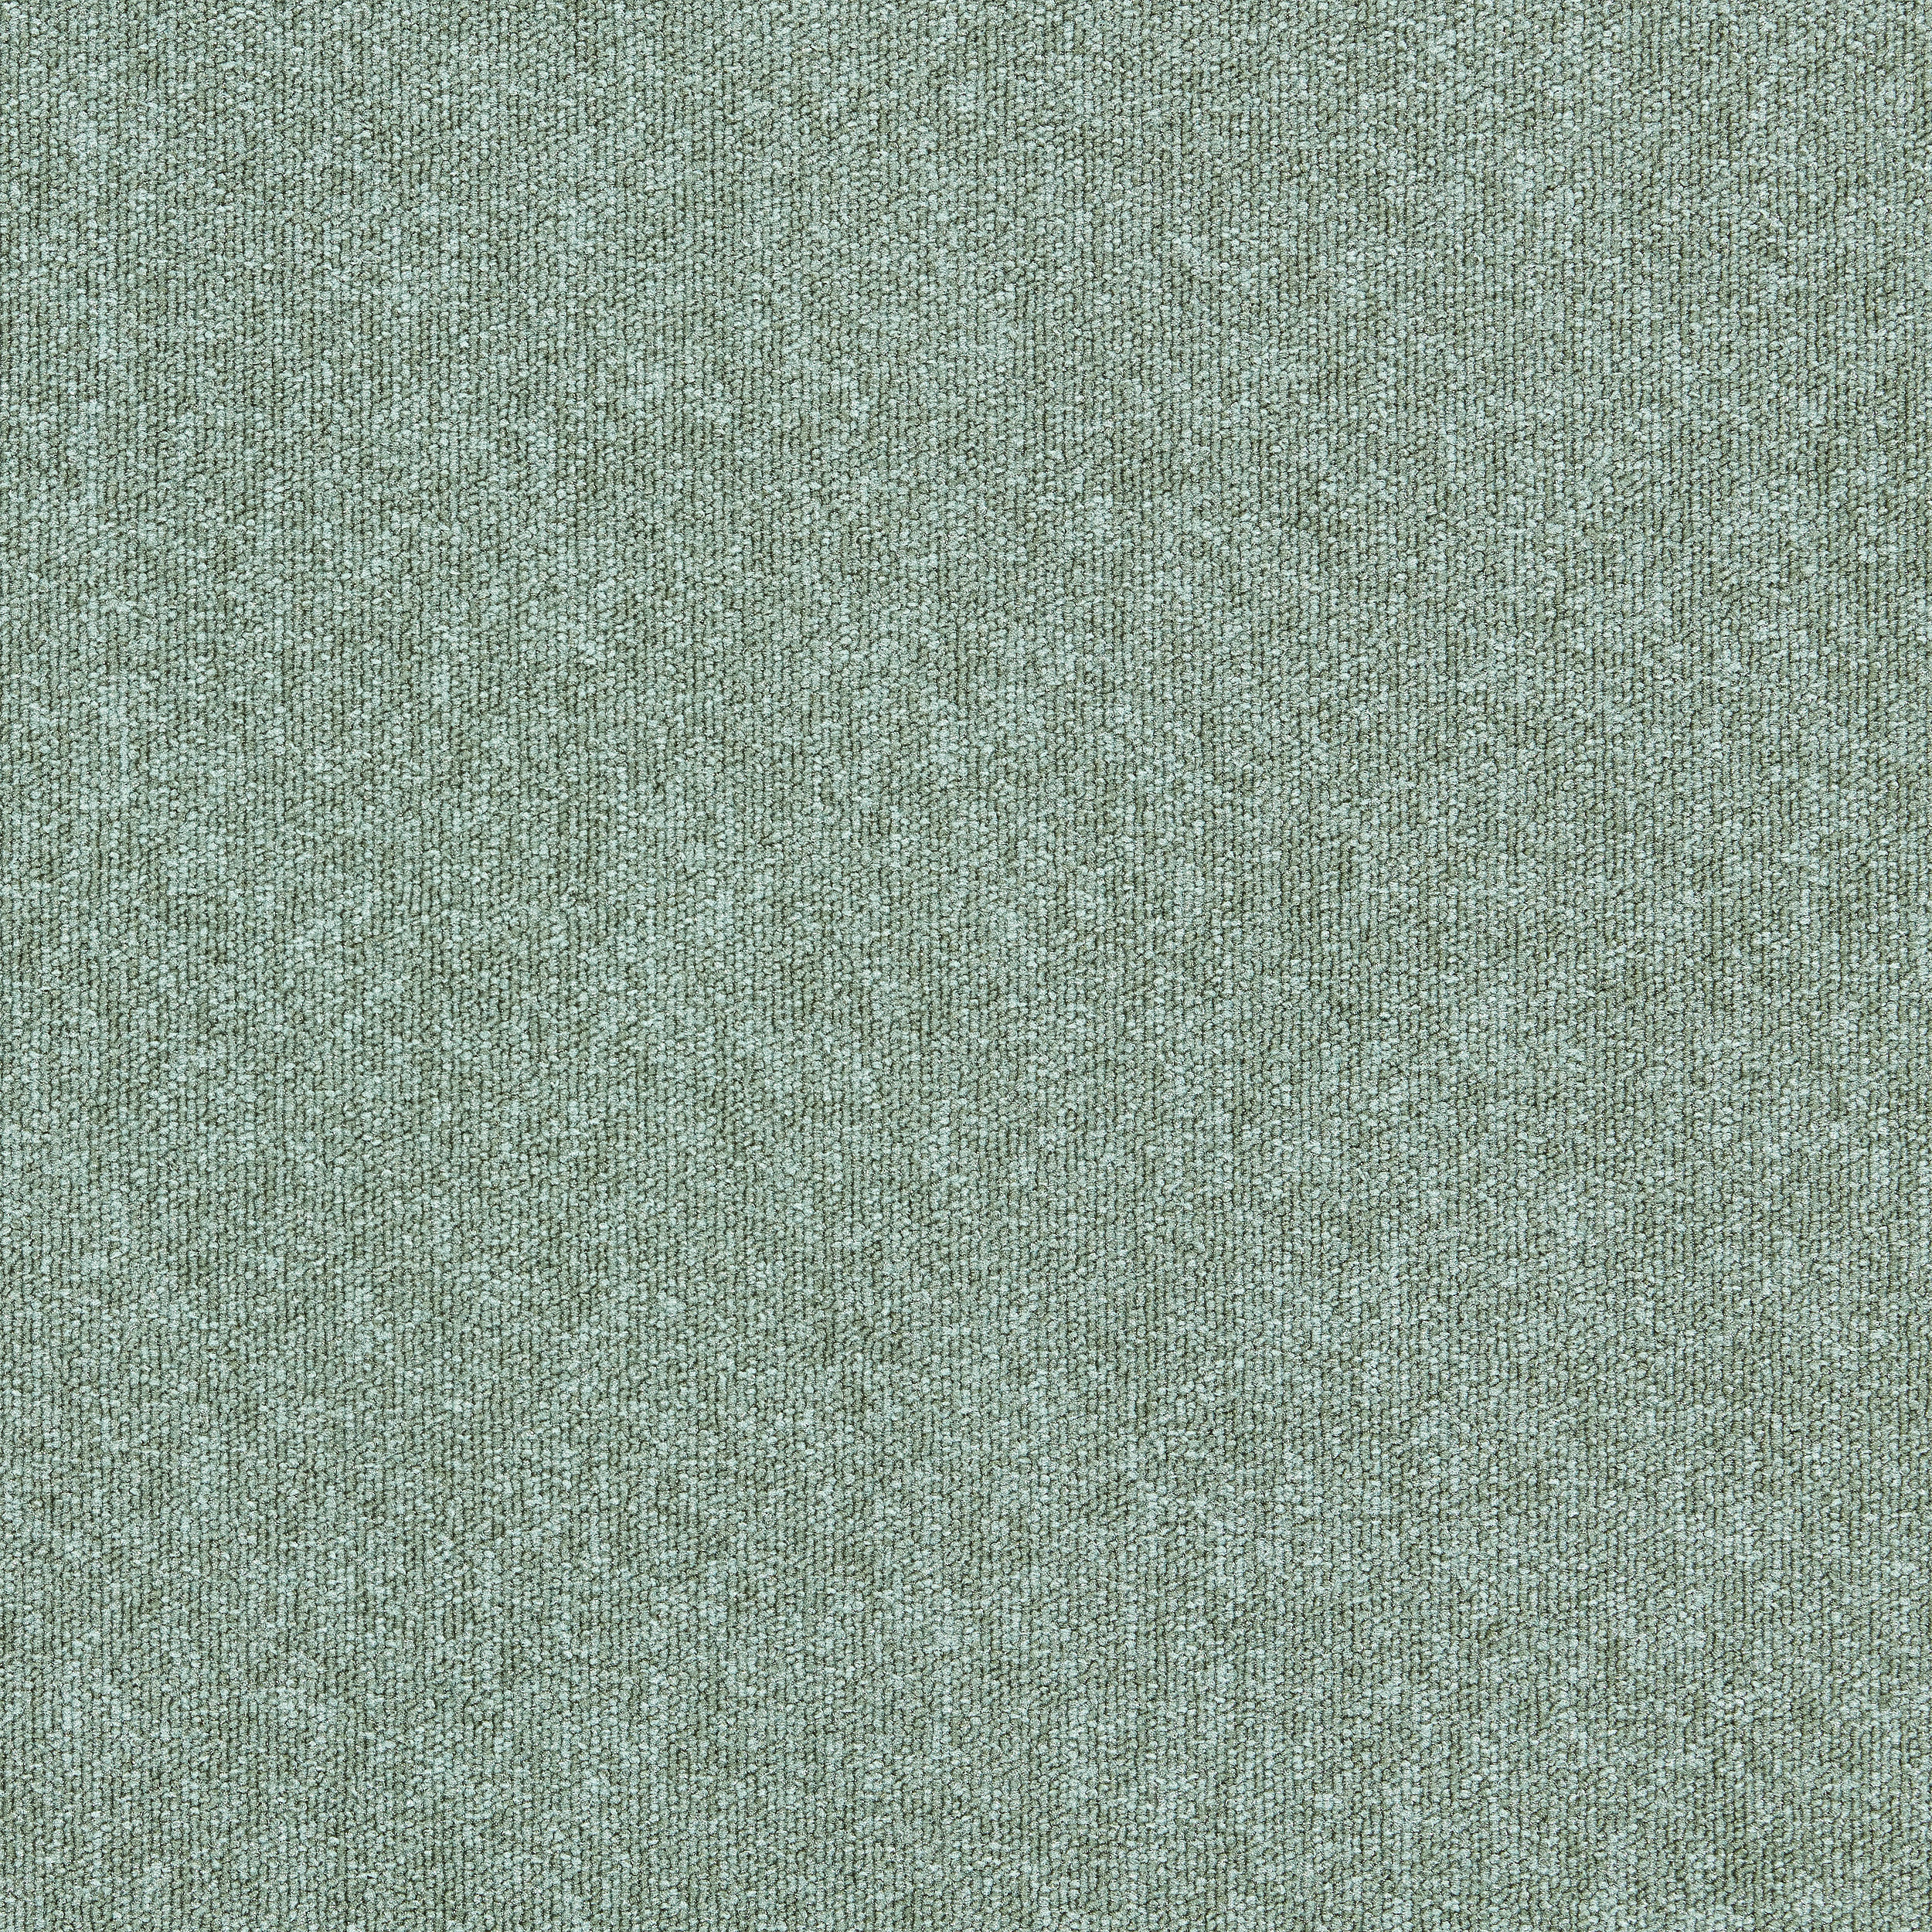 Heuga 580 II carpet tile in Laurel Bildnummer 6